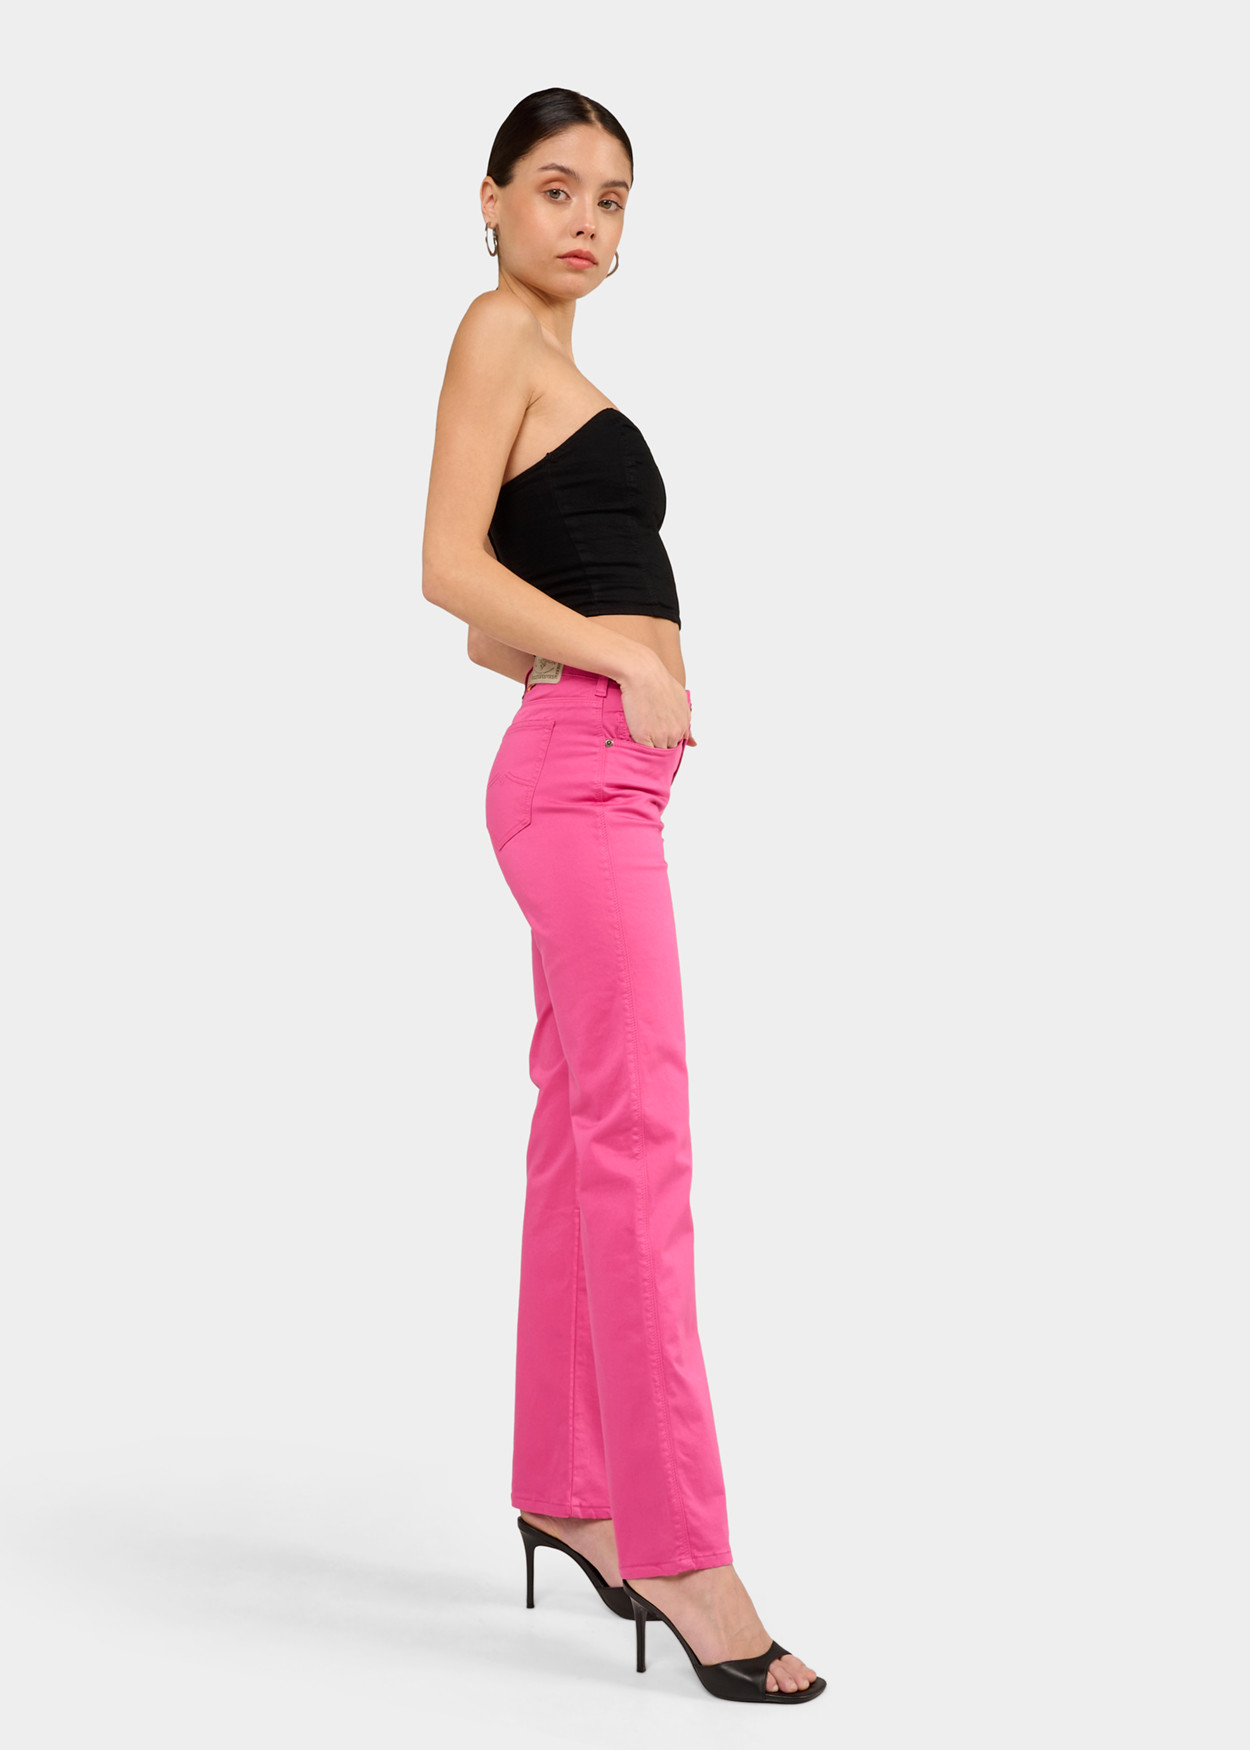 CLAUDIA-NECTAR - Pantalon de couleur - Pantalon évasé - Short long en satin élastique | Tailles en pouces Cimarron